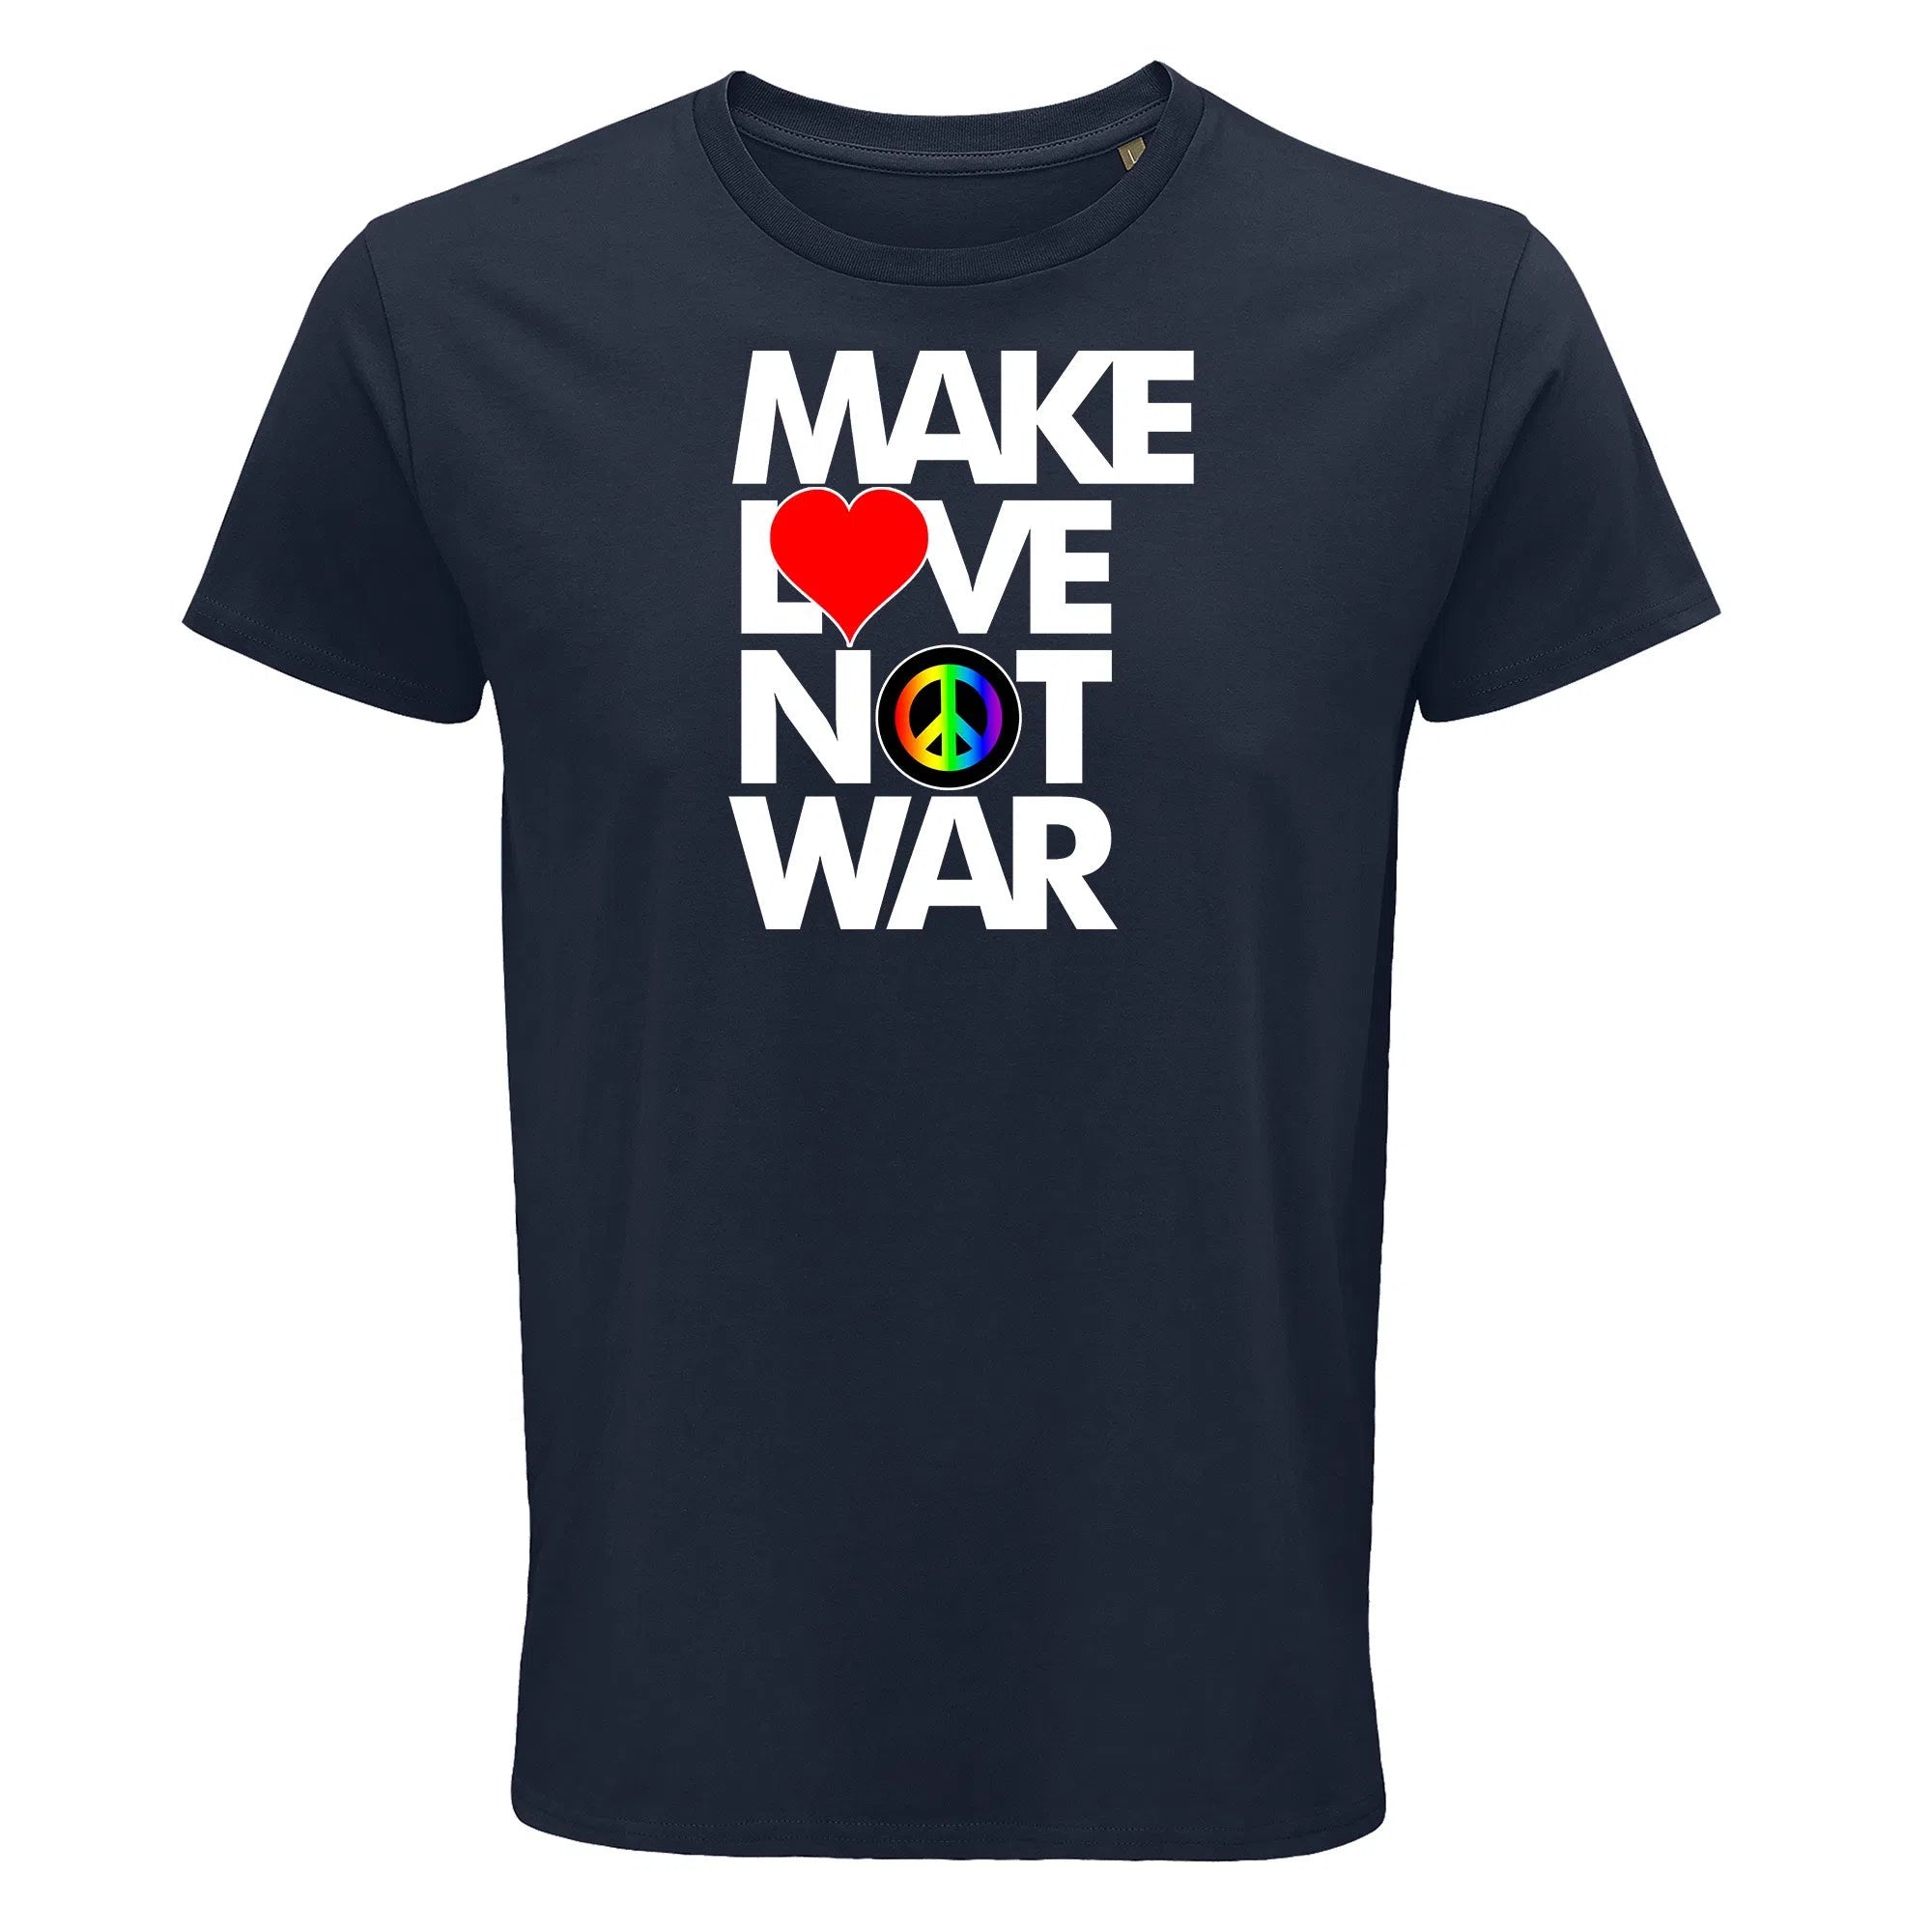 Make love, not war-Imagesdartistes